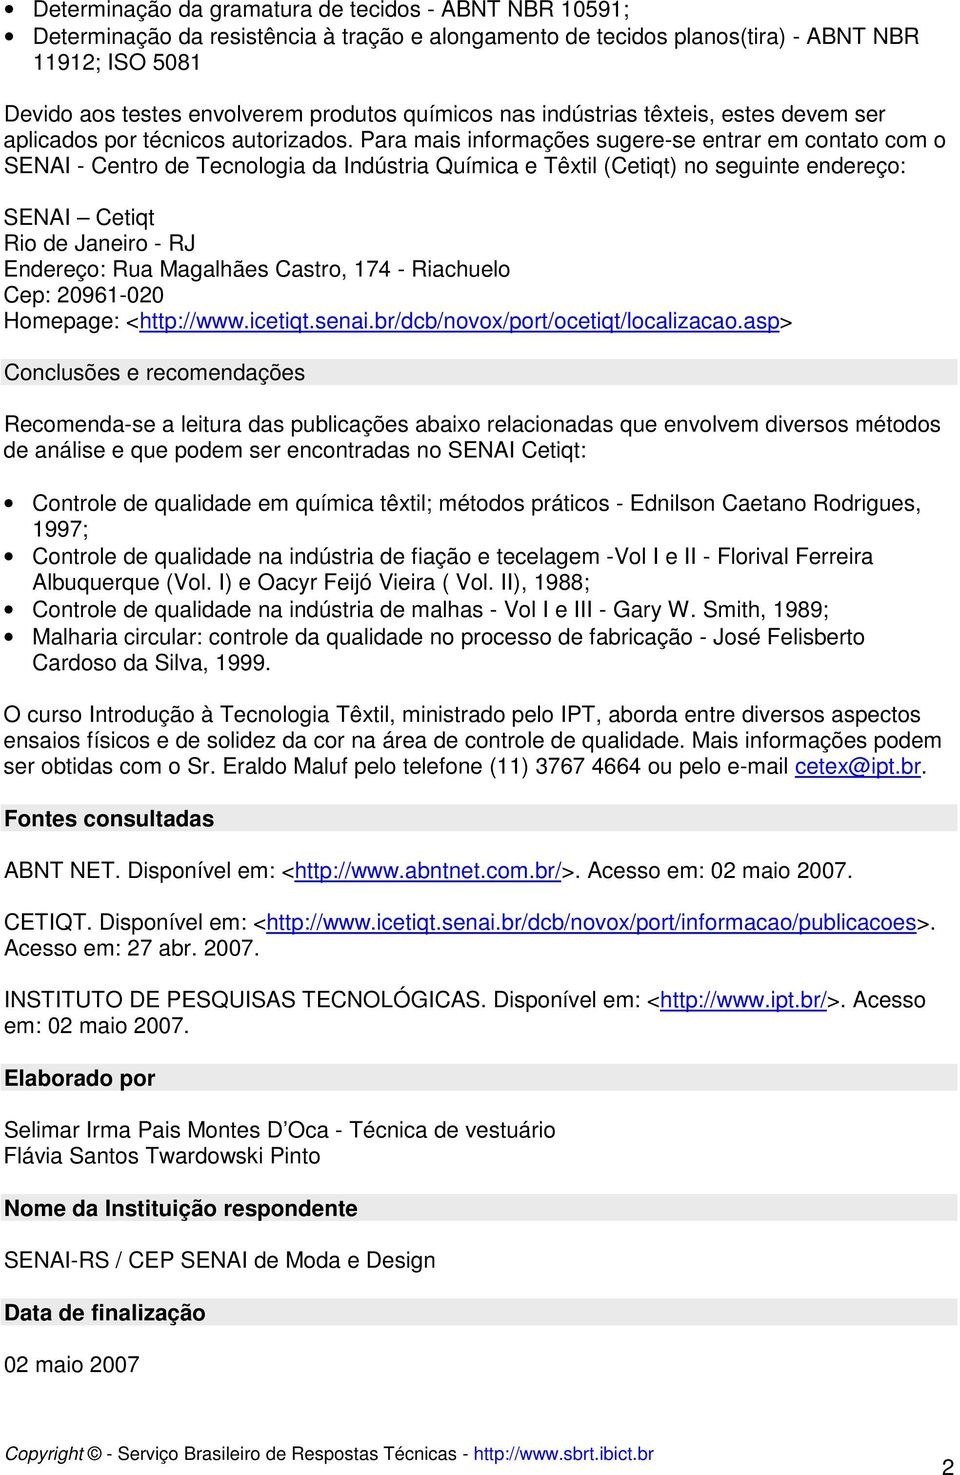 Para mais informações sugere-se entrar em contato com o SENAI - Centro de Tecnologia da Indústria Química e Têxtil (Cetiqt) no seguinte endereço: SENAI Cetiqt Rio de Janeiro - RJ Endereço: Rua